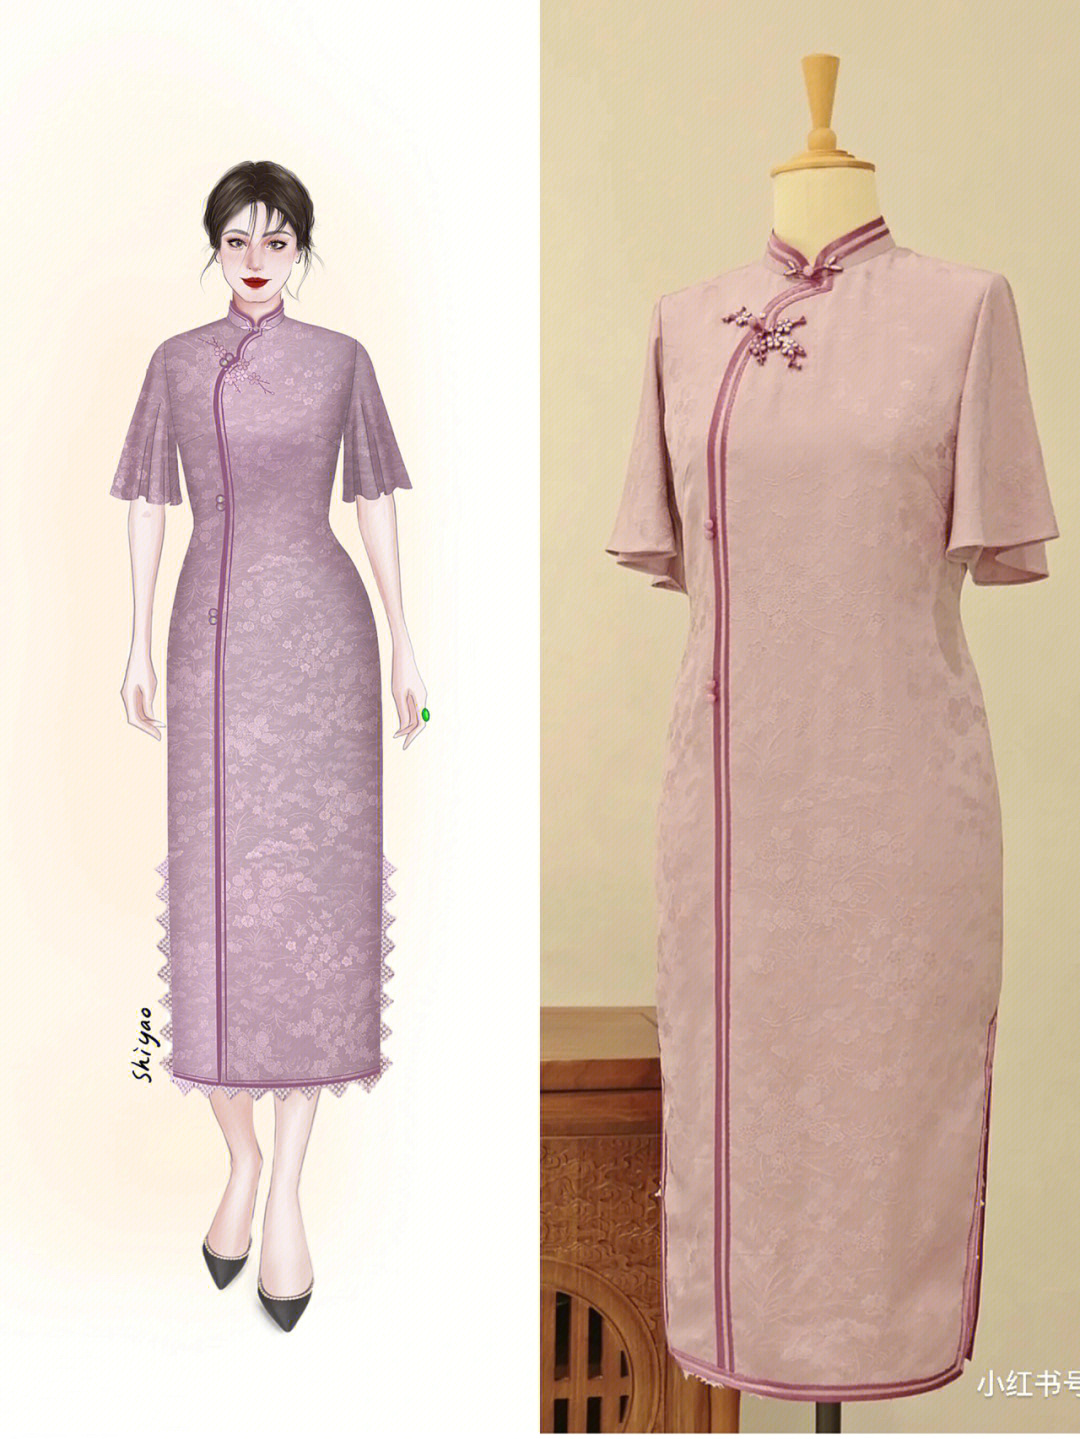 客订紫色荷叶袖正绢旗袍设计图